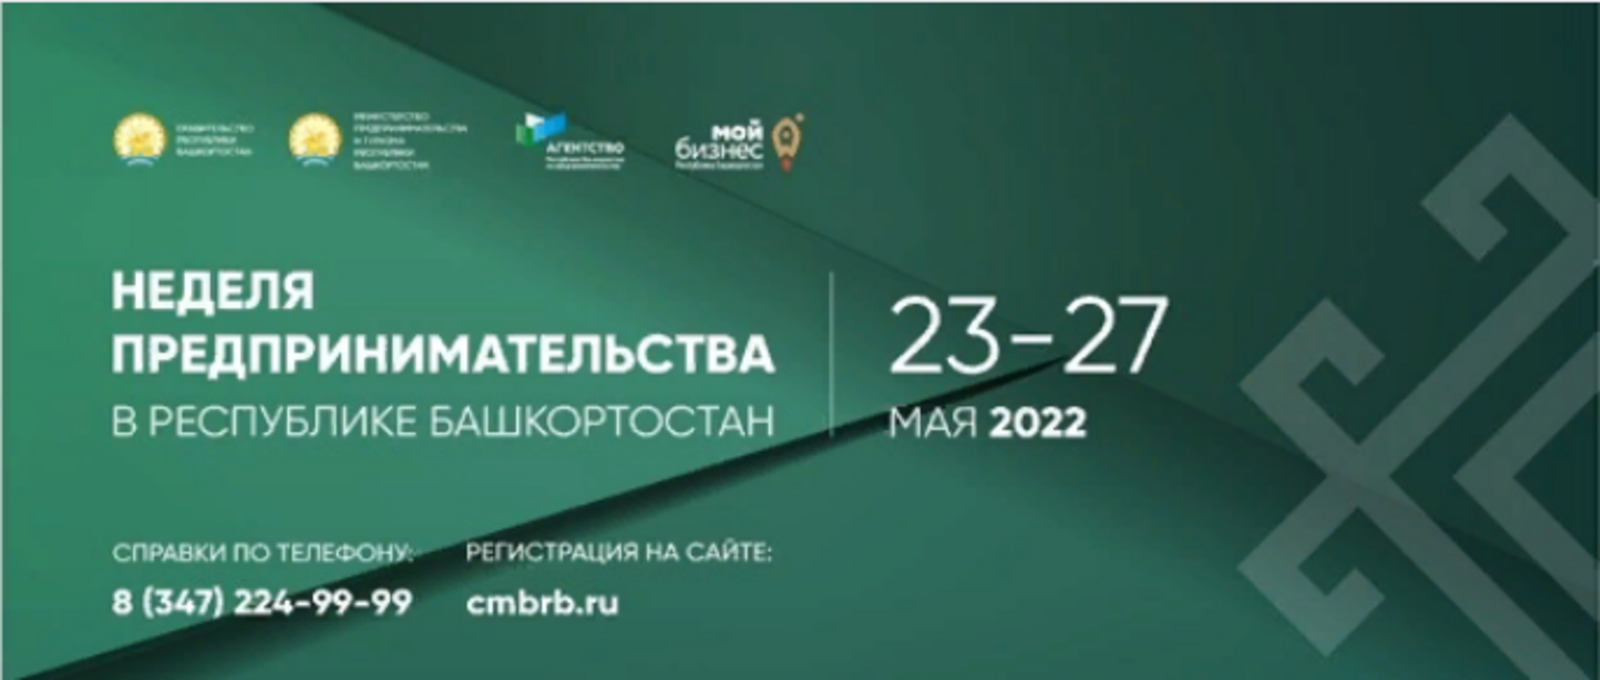 В Башкортостане пройдет Неделя предпринимательства